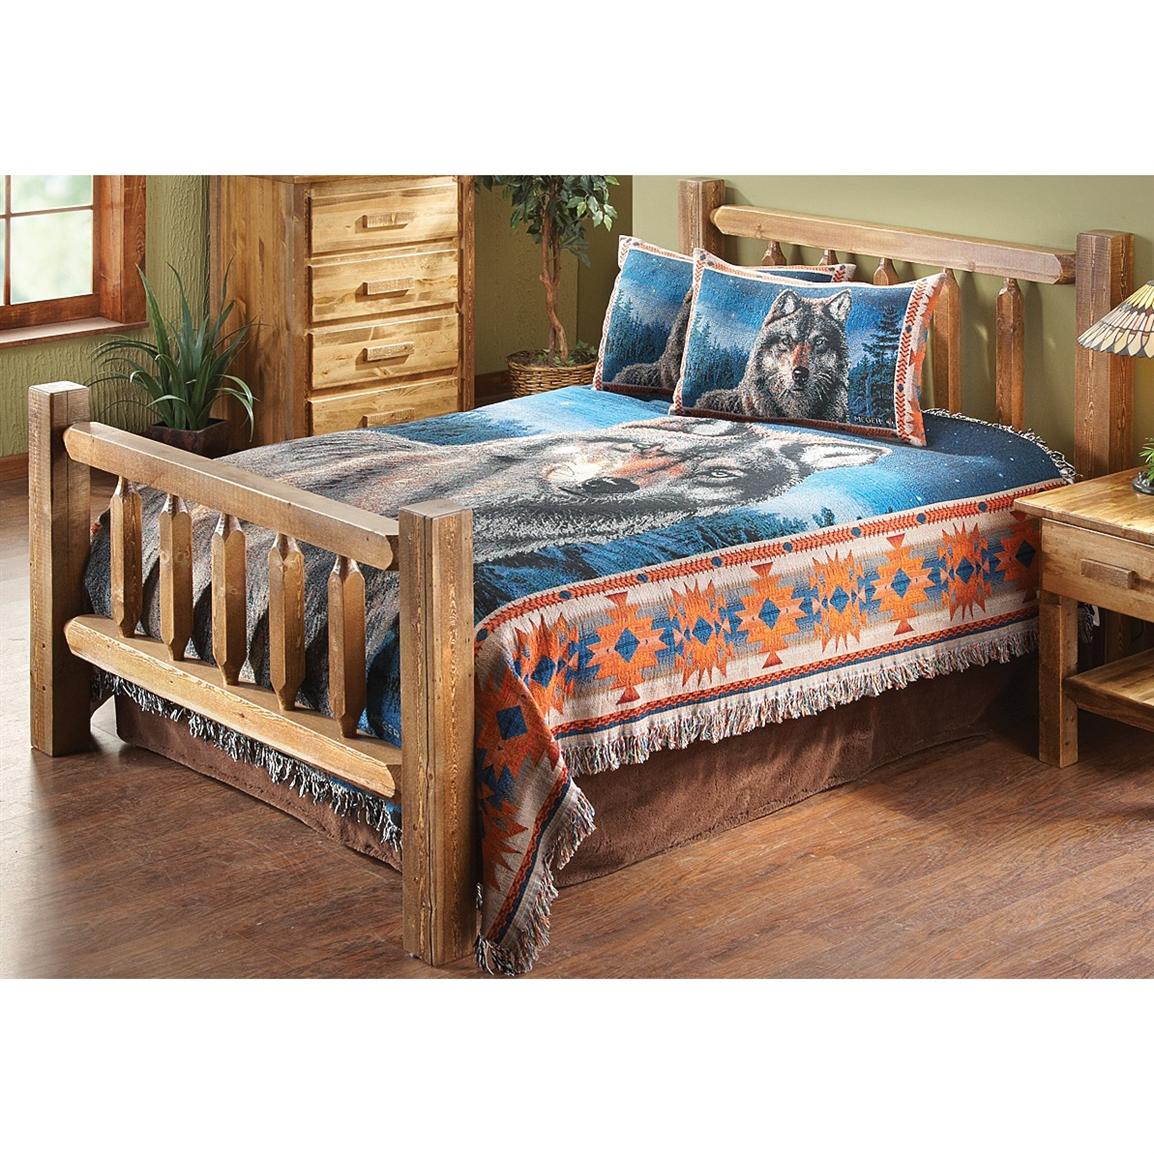 Montana Woodworks Homestead King Deluxe Log Bed 205593 Bedroom